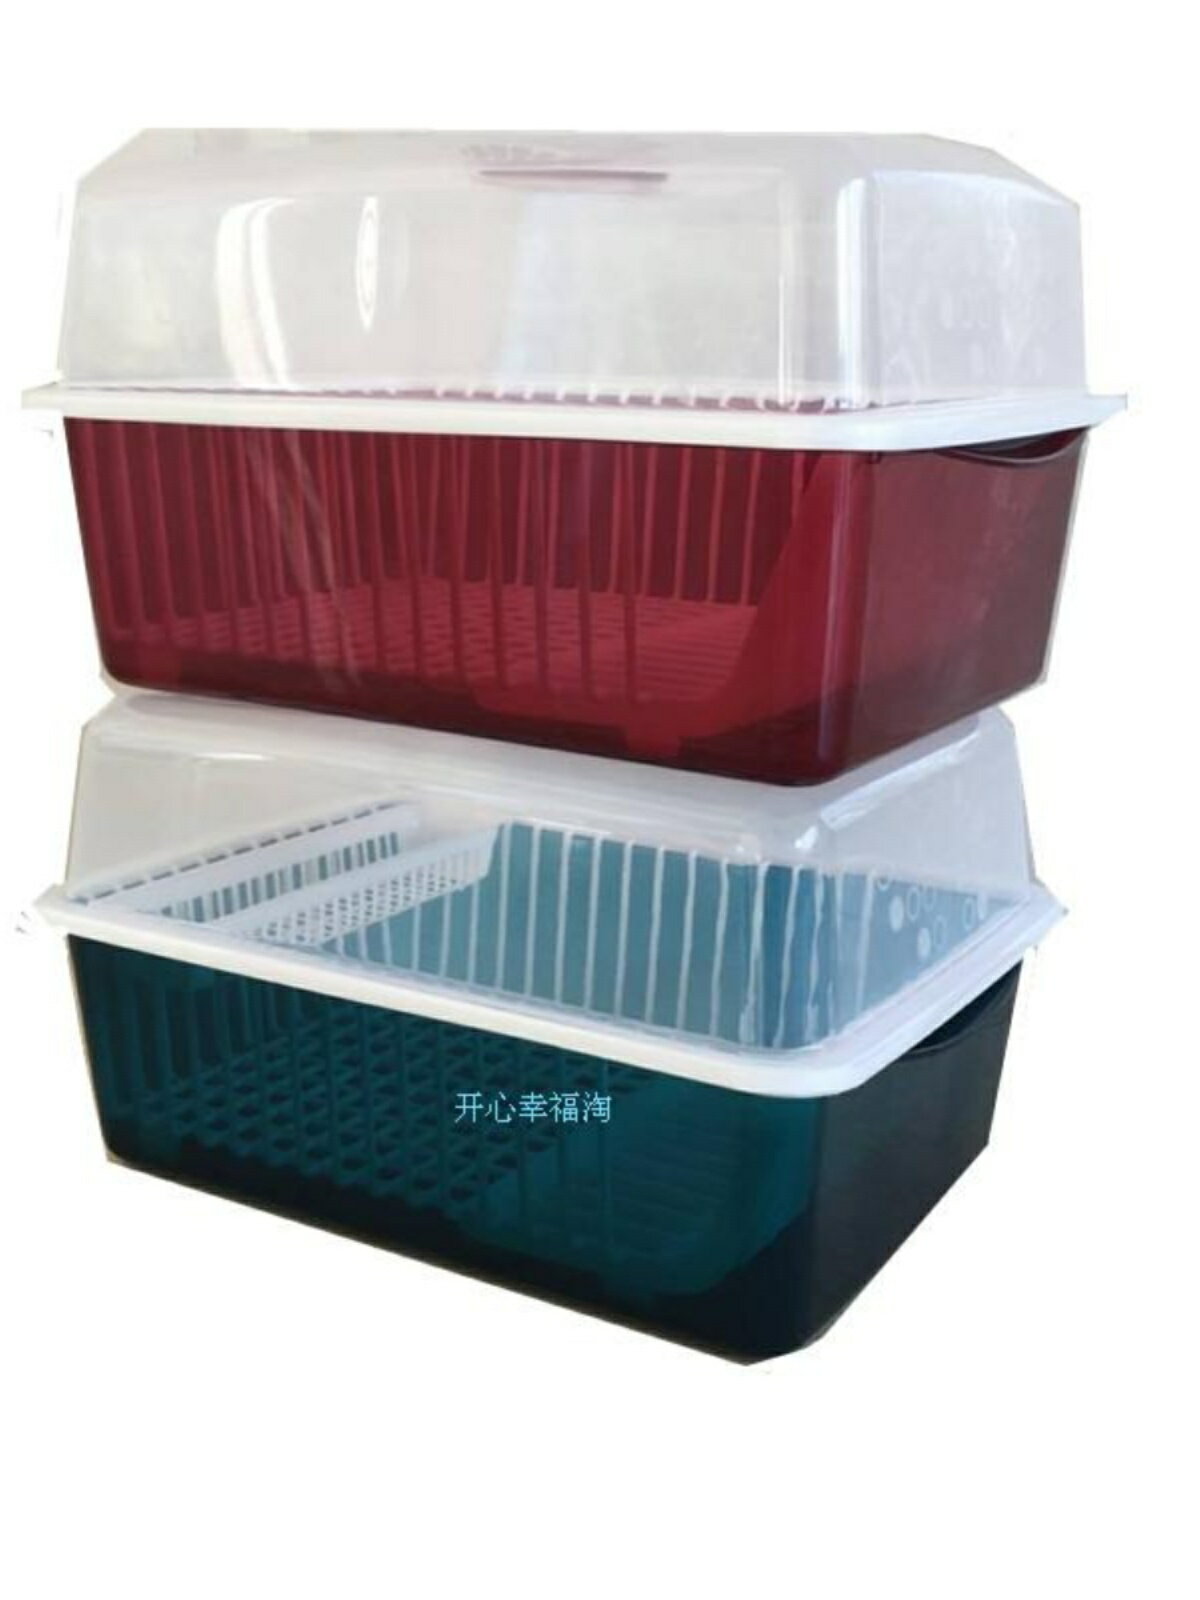 碗柜塑料廚房瀝水碗架帶蓋碗筷餐具收納盒放碗碟架滴水置物架精致